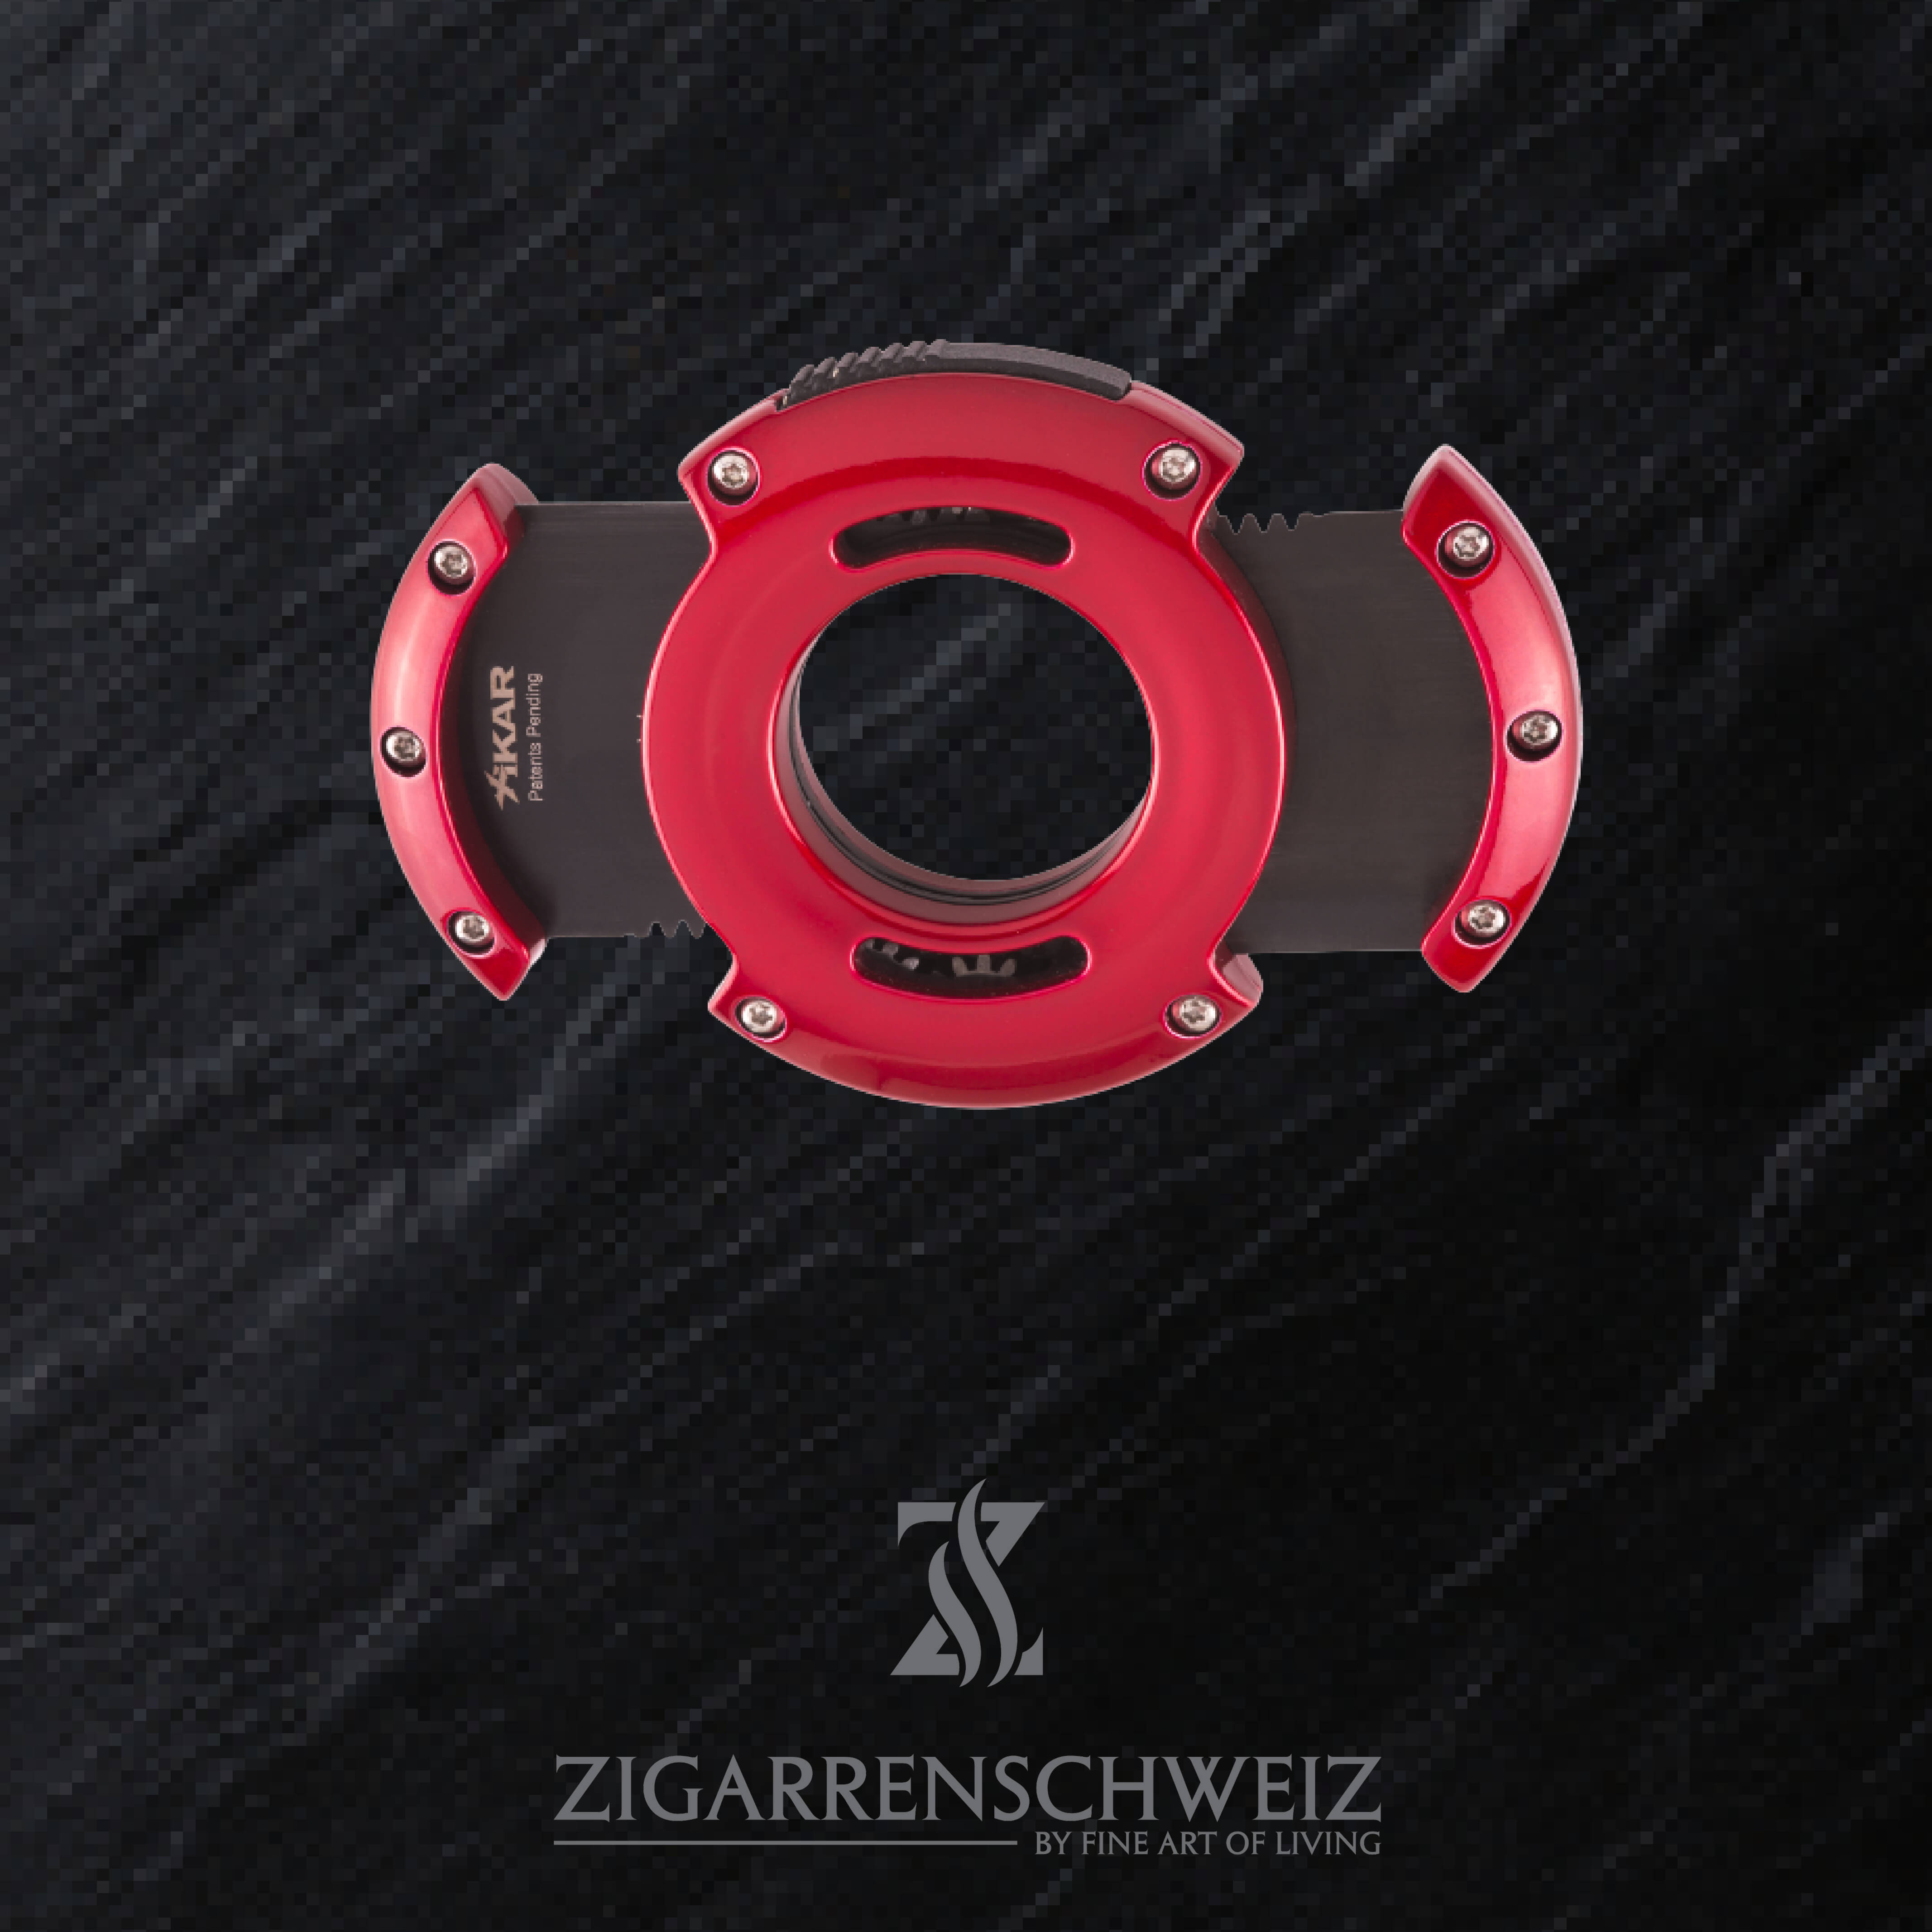 Xikar XO Zigarren Cutter, Farbe Gehäuse: Rot, Farbe Klingen: Schwarz, offen